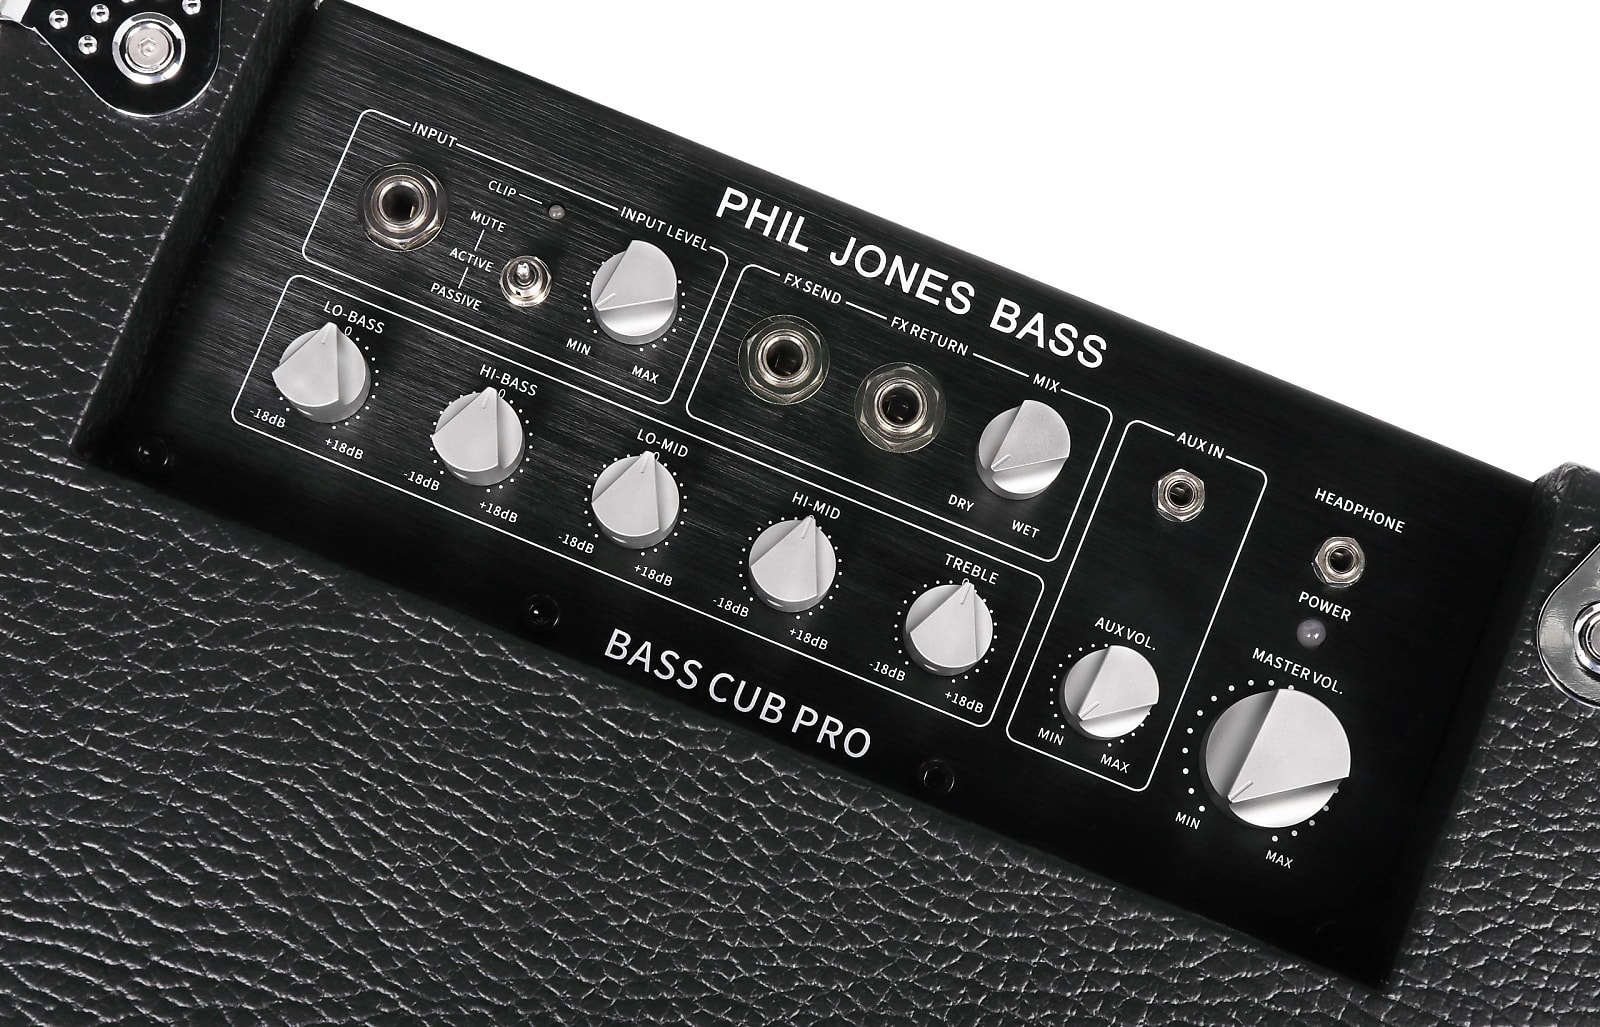 Phil Jones BG-120 Bass Cub Pro 120W 2x5